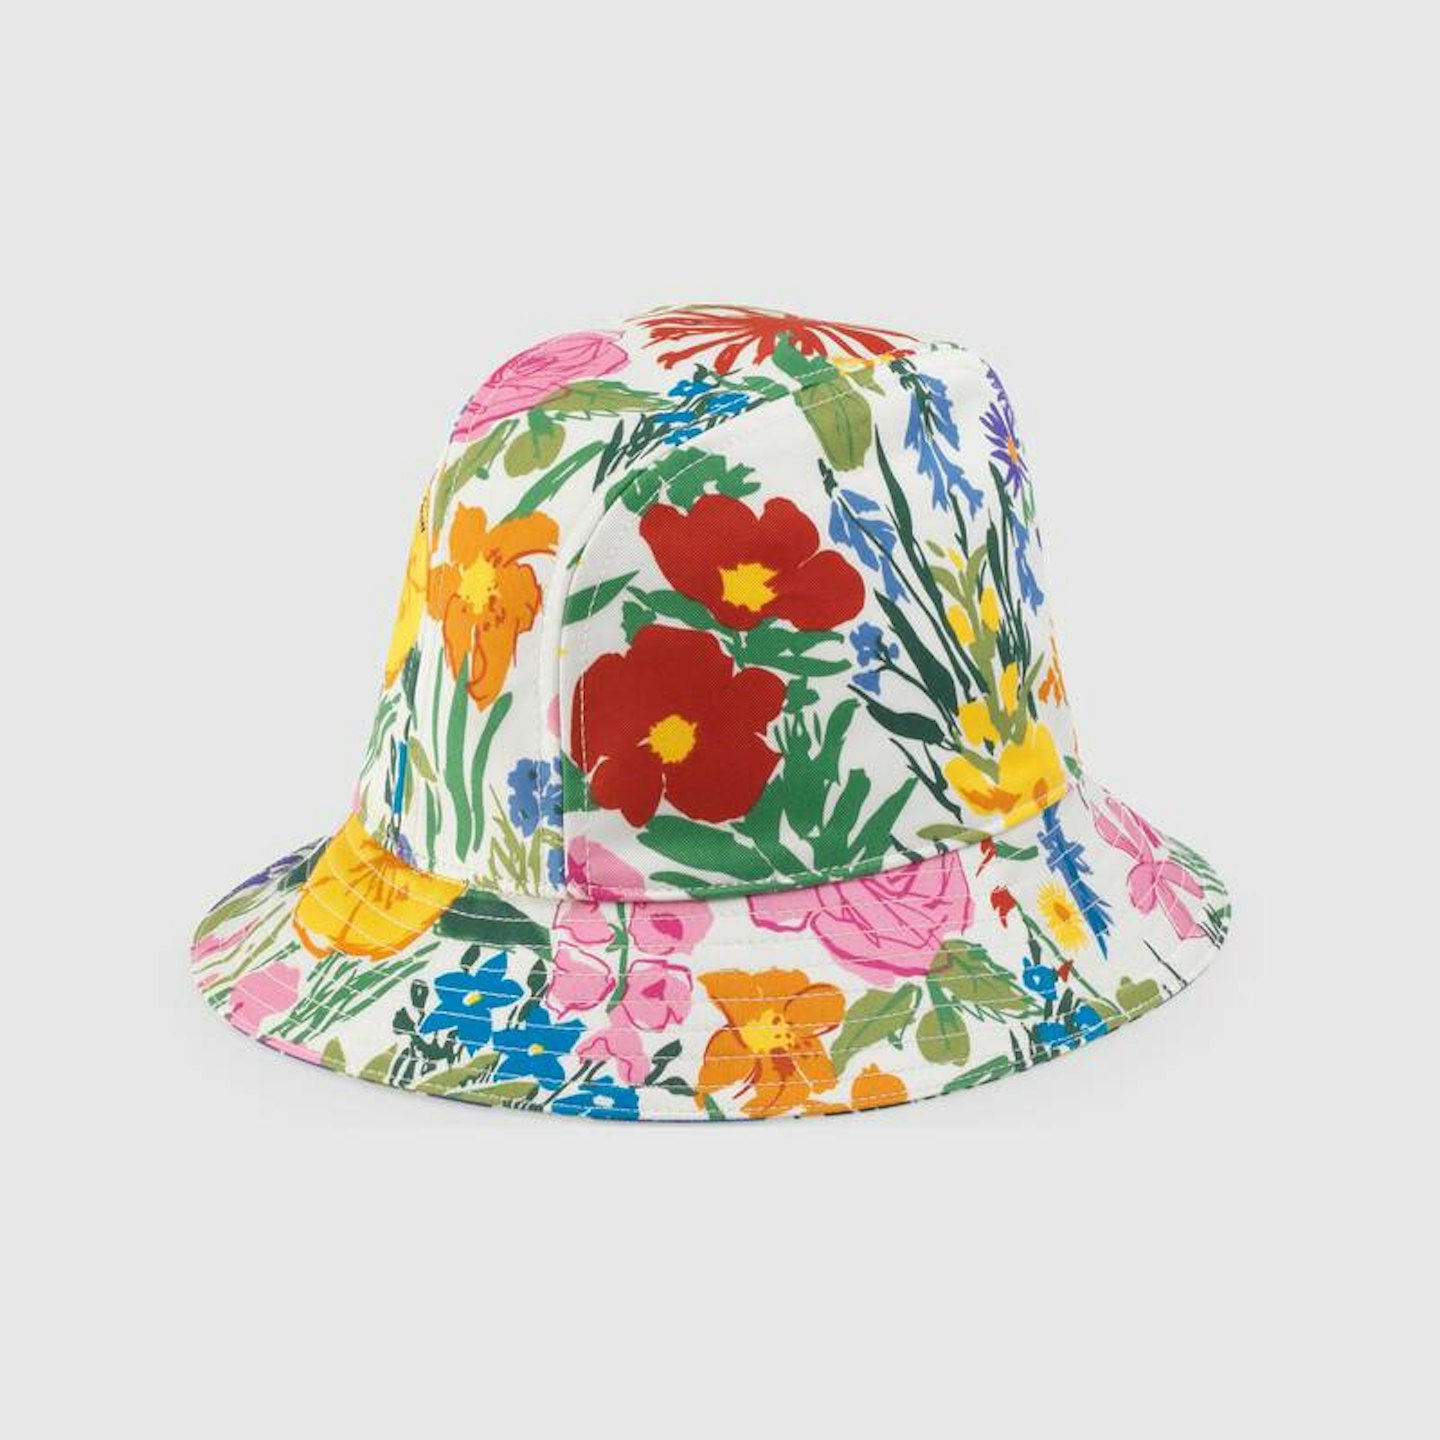 Gucci, Ken Scott Print Cotton Bucket Hat, £315